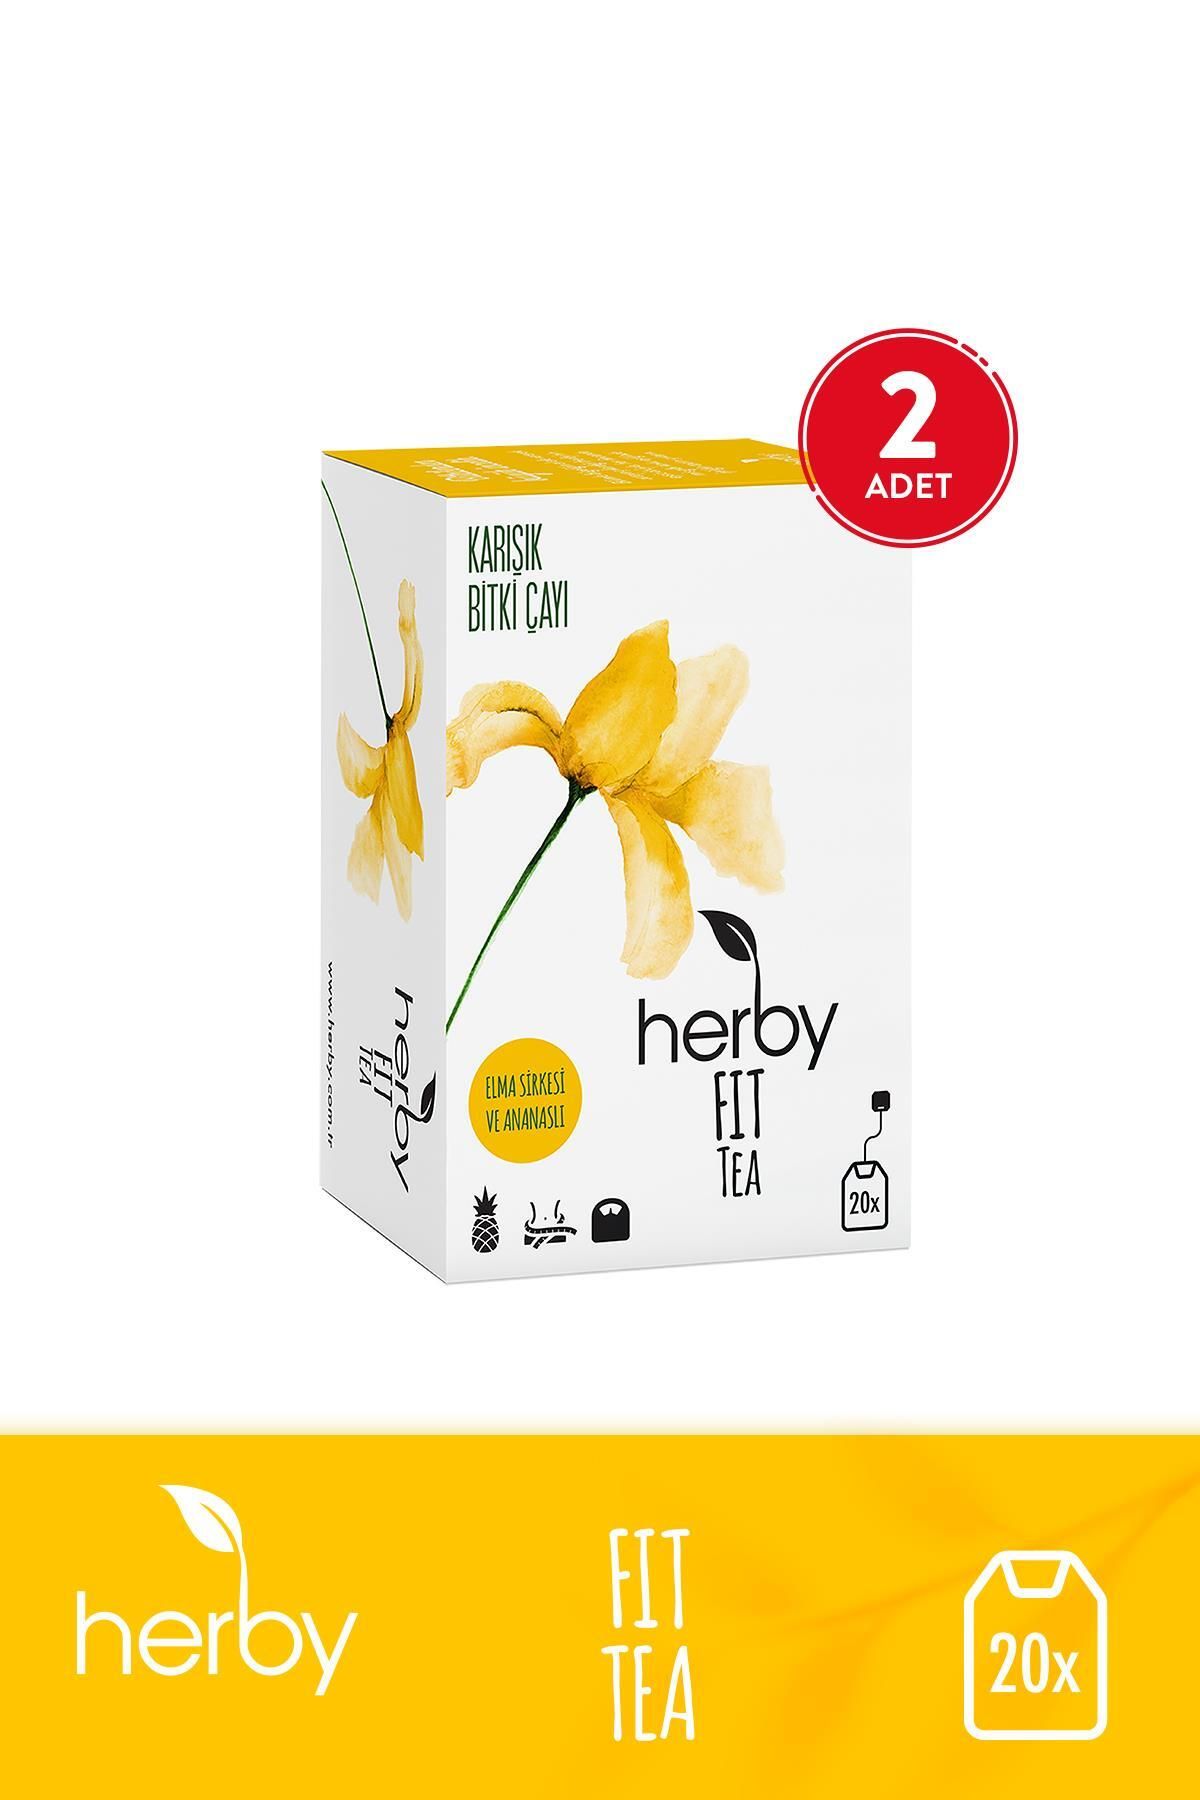 Herby Fit Tea Elma Sirkeli Ananaslı Diyete Destek Form Bitki Çayı 2'li Paket